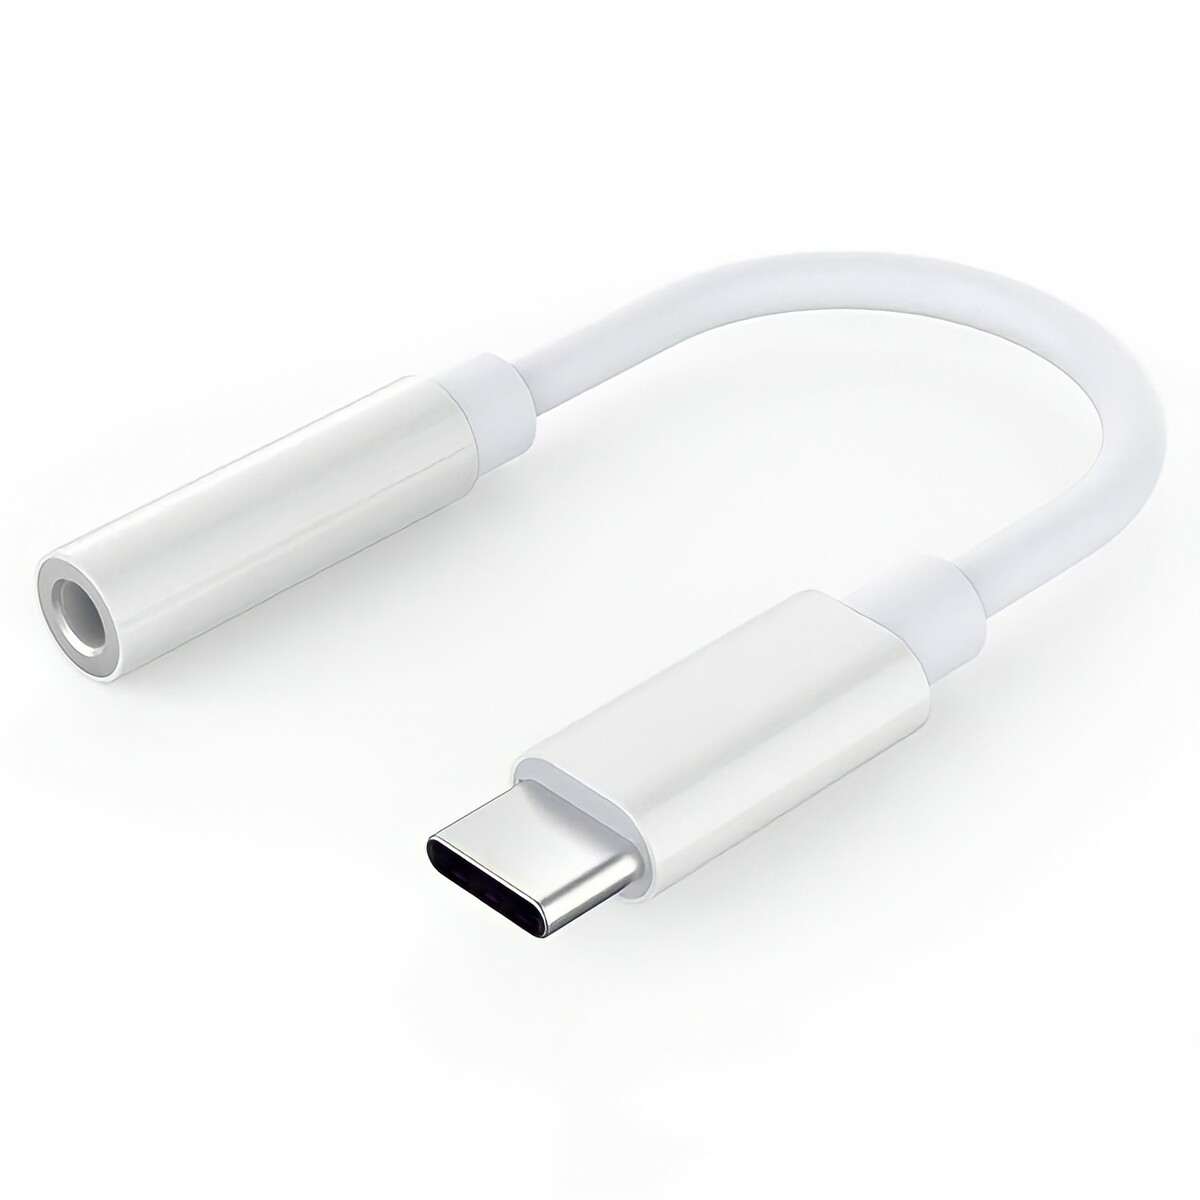 USB-C用のイヤホンジャックコネクタです イヤホン 【SALE】 変換アダプタ USB type C Android Pro iPad Galaxy対応版 Aiir iPadmini6 SALE 86%OFF